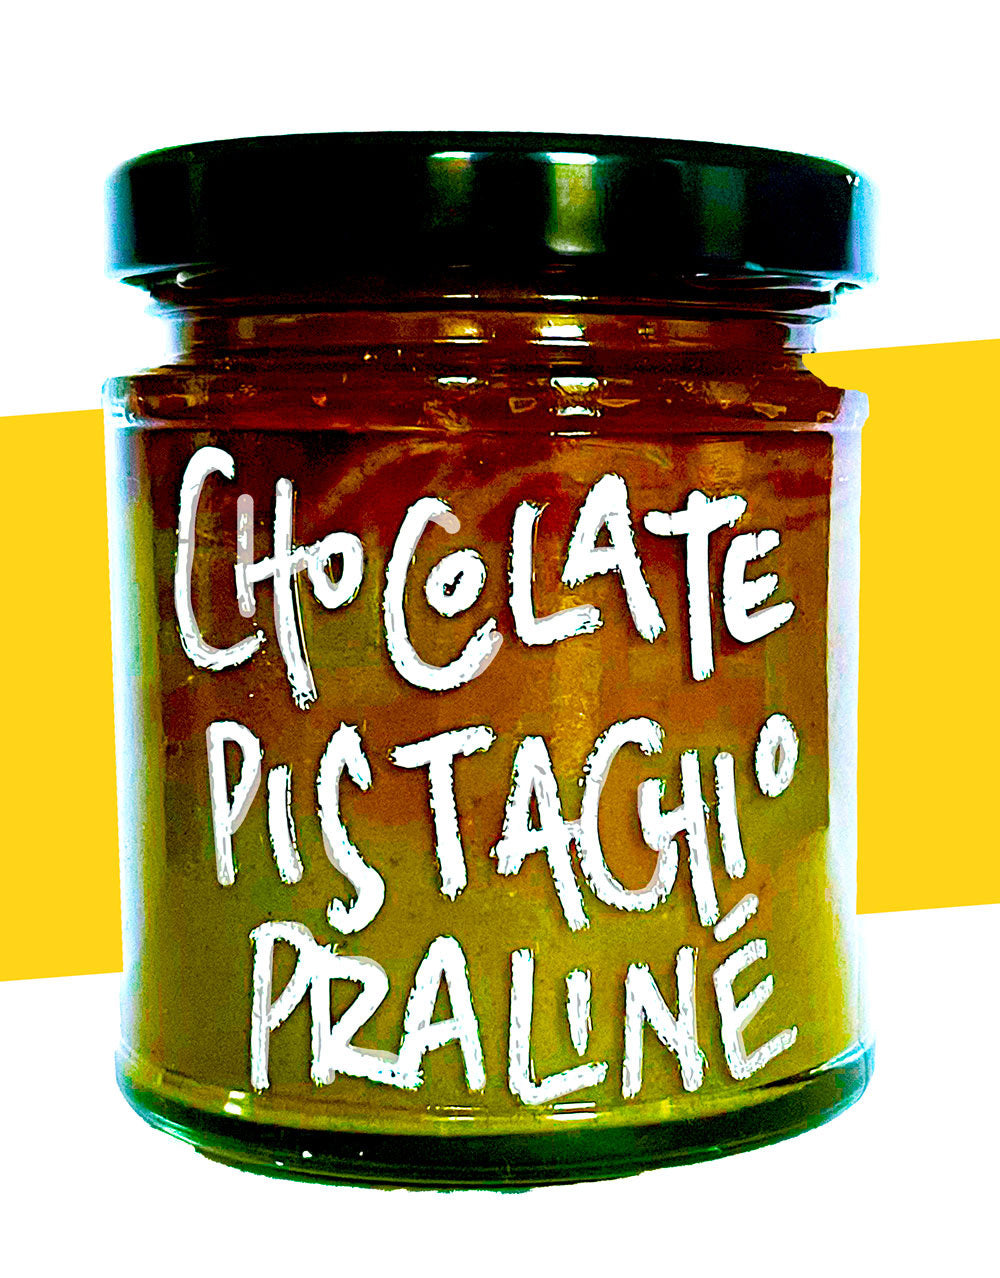 Chocolate & pistachio praliné spread